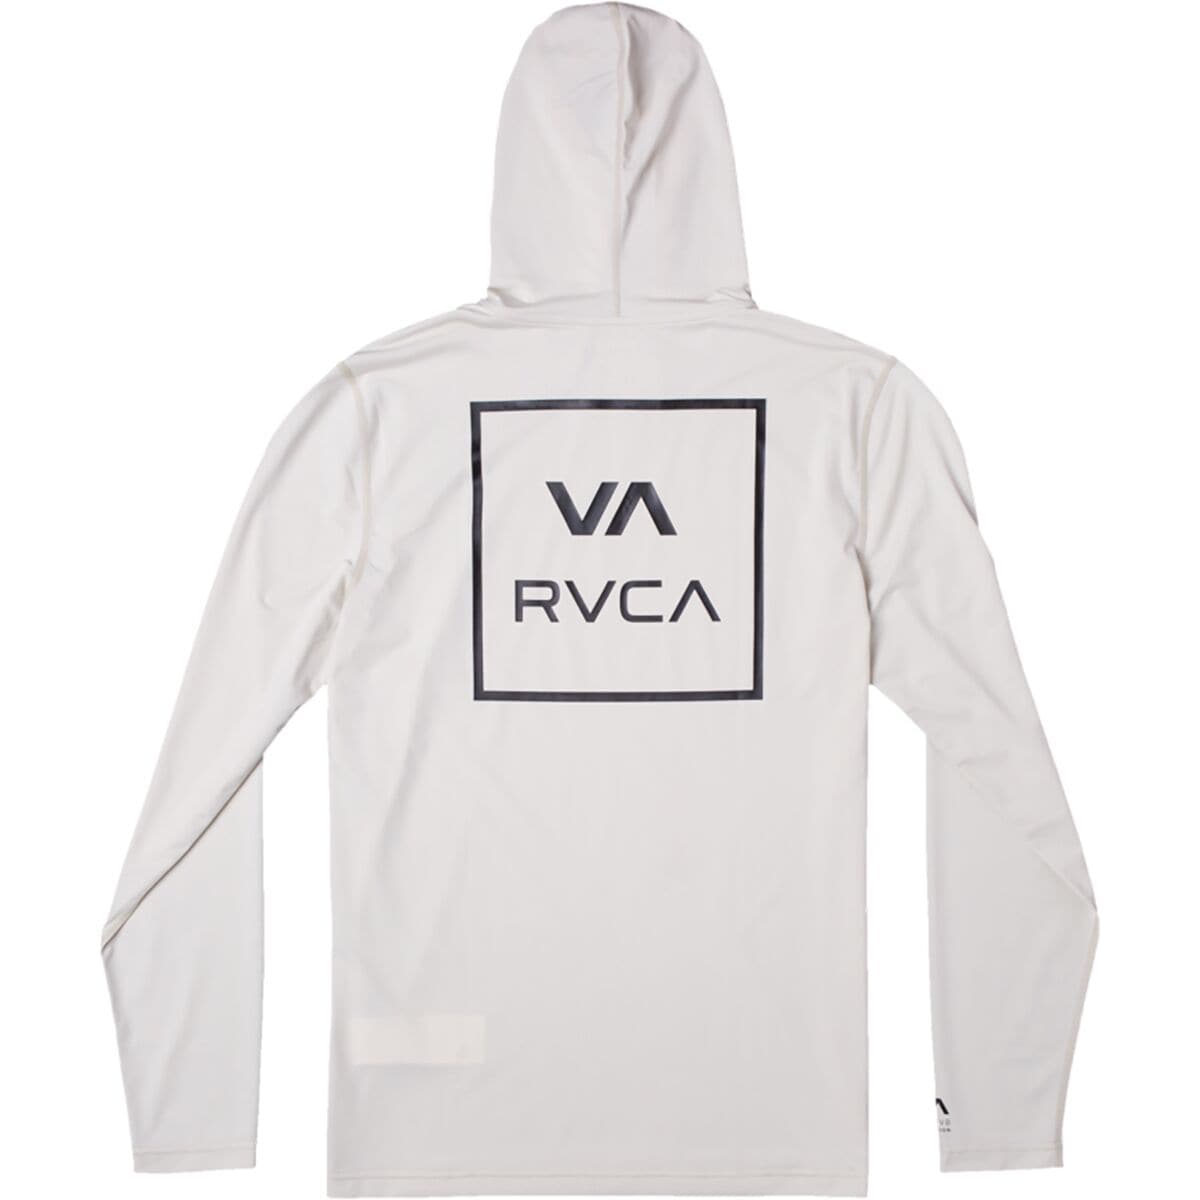 RVCA Surf Shirt Hoodie - Boys'